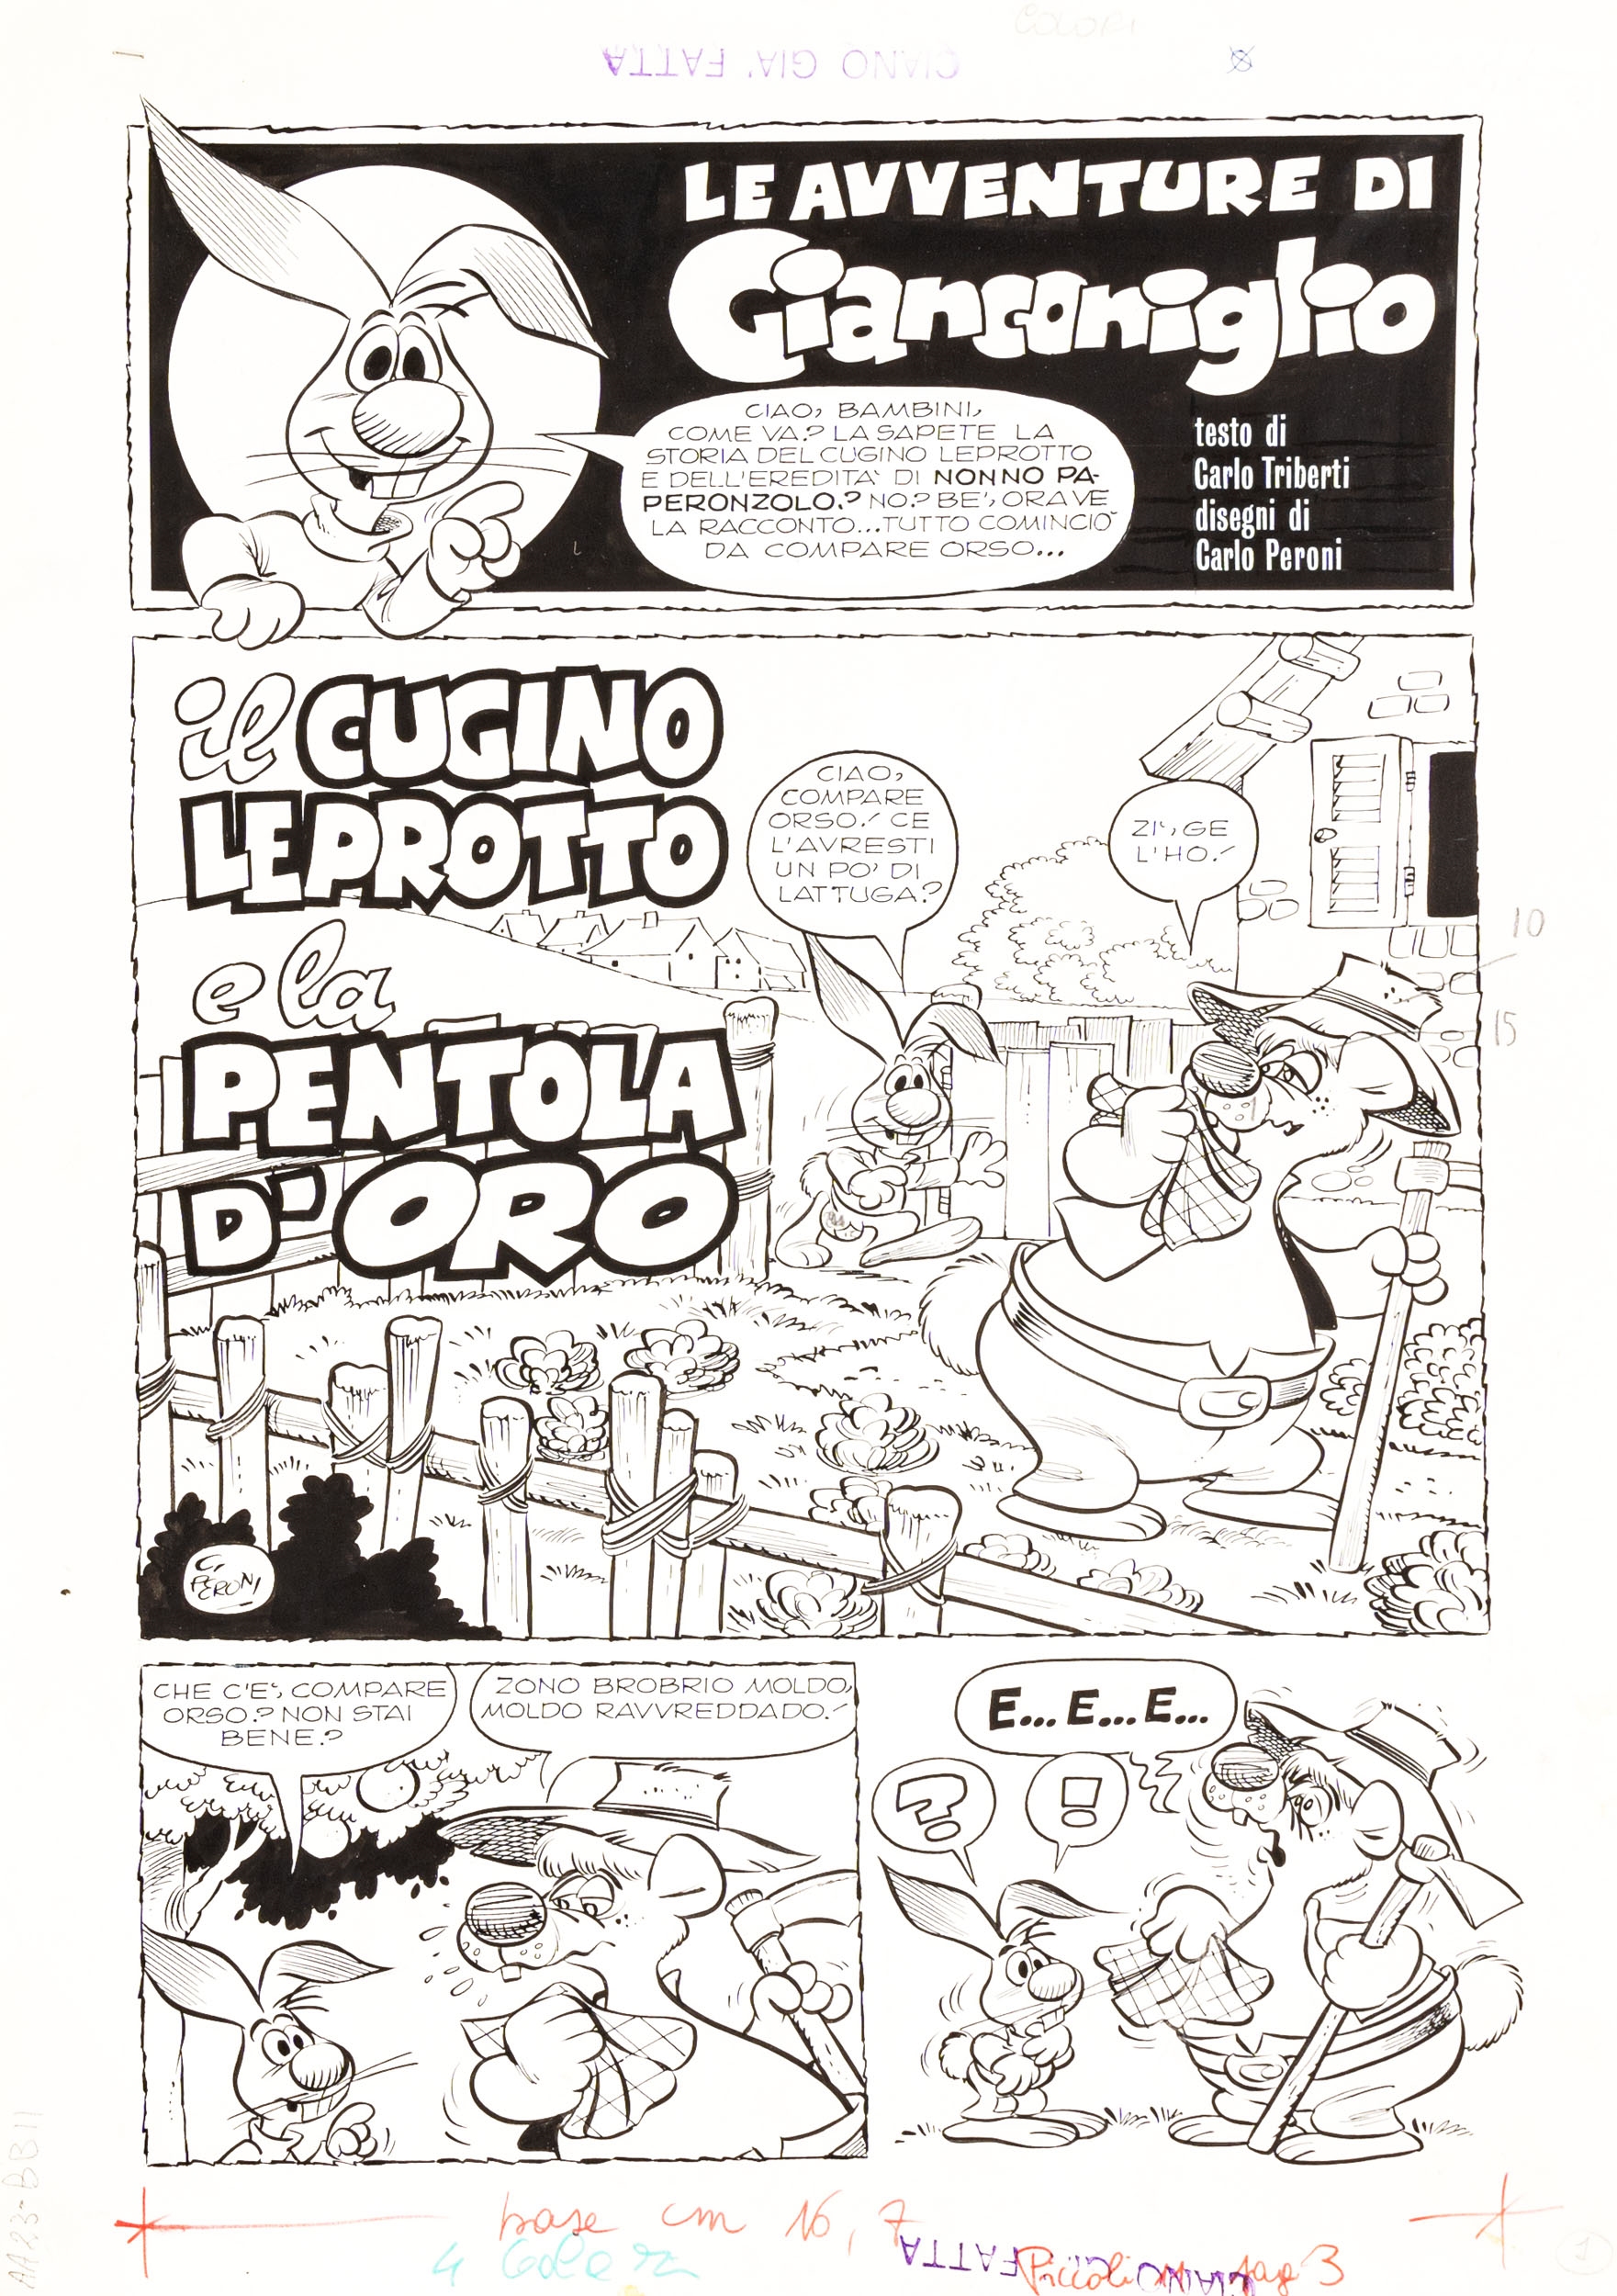 Le avventure di Gianconiglio: il cugino leprotto e la pentola d'oro, complete story in 8 pages by Carlo Peroni, 1972